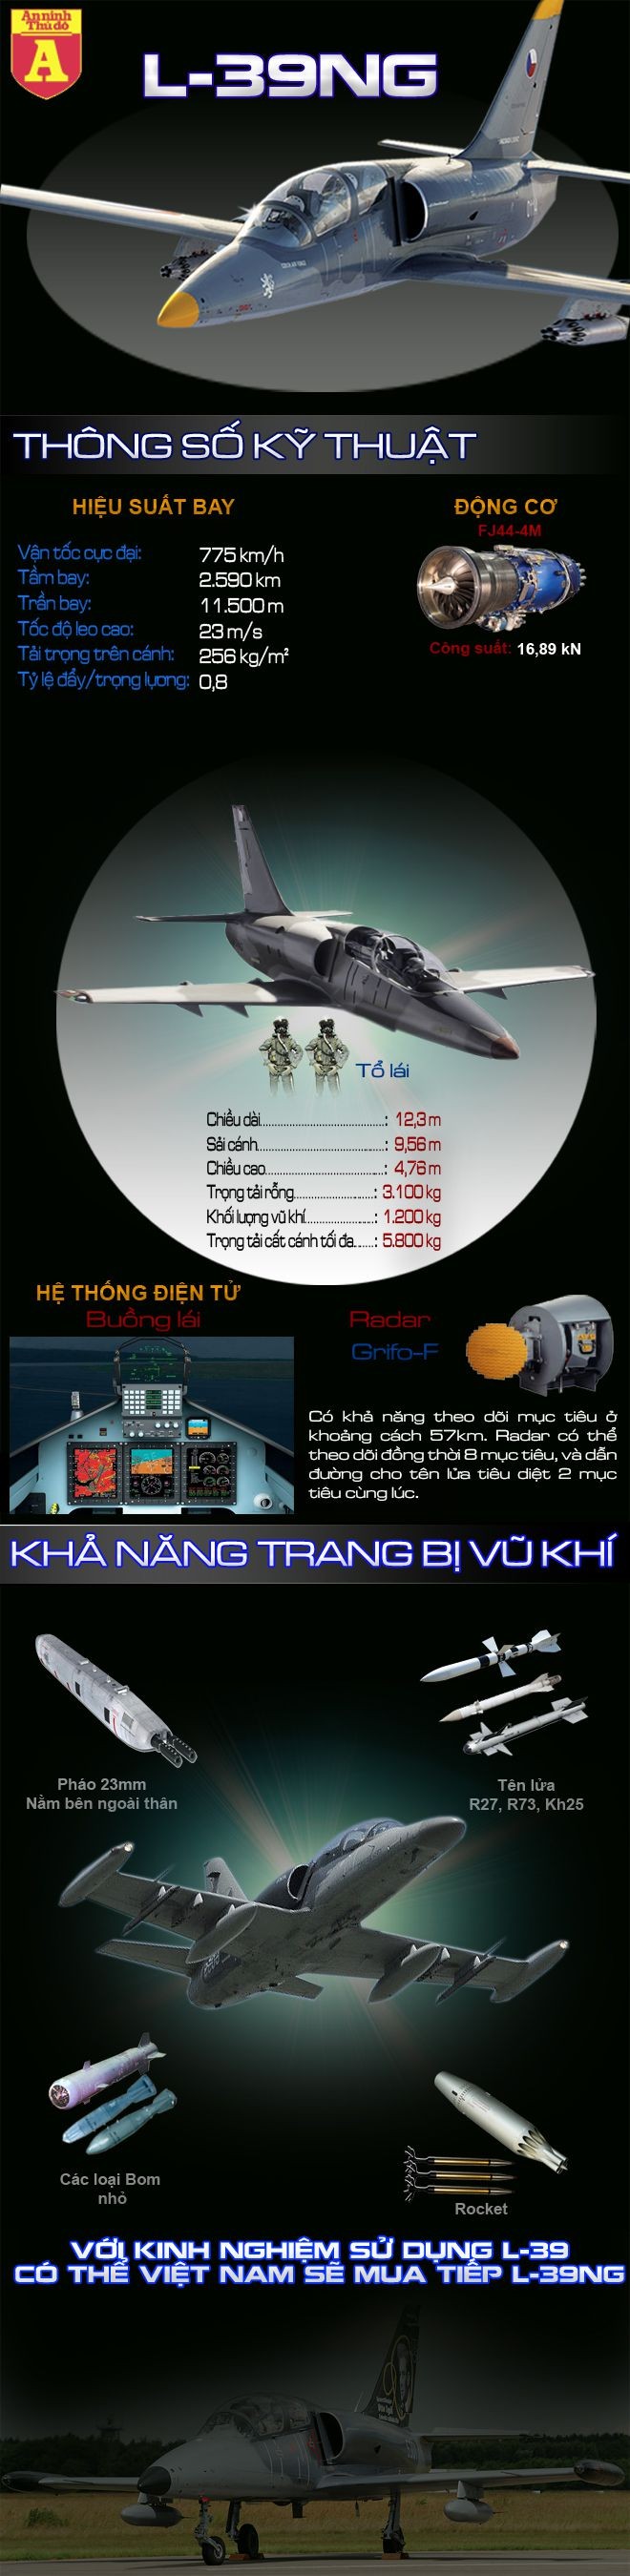 [Infographic] Việt Nam tiếp tục chọn phiên bản huấn luyện tối tân dựa trên huyền thoại L-39 cải tiến? ảnh 1